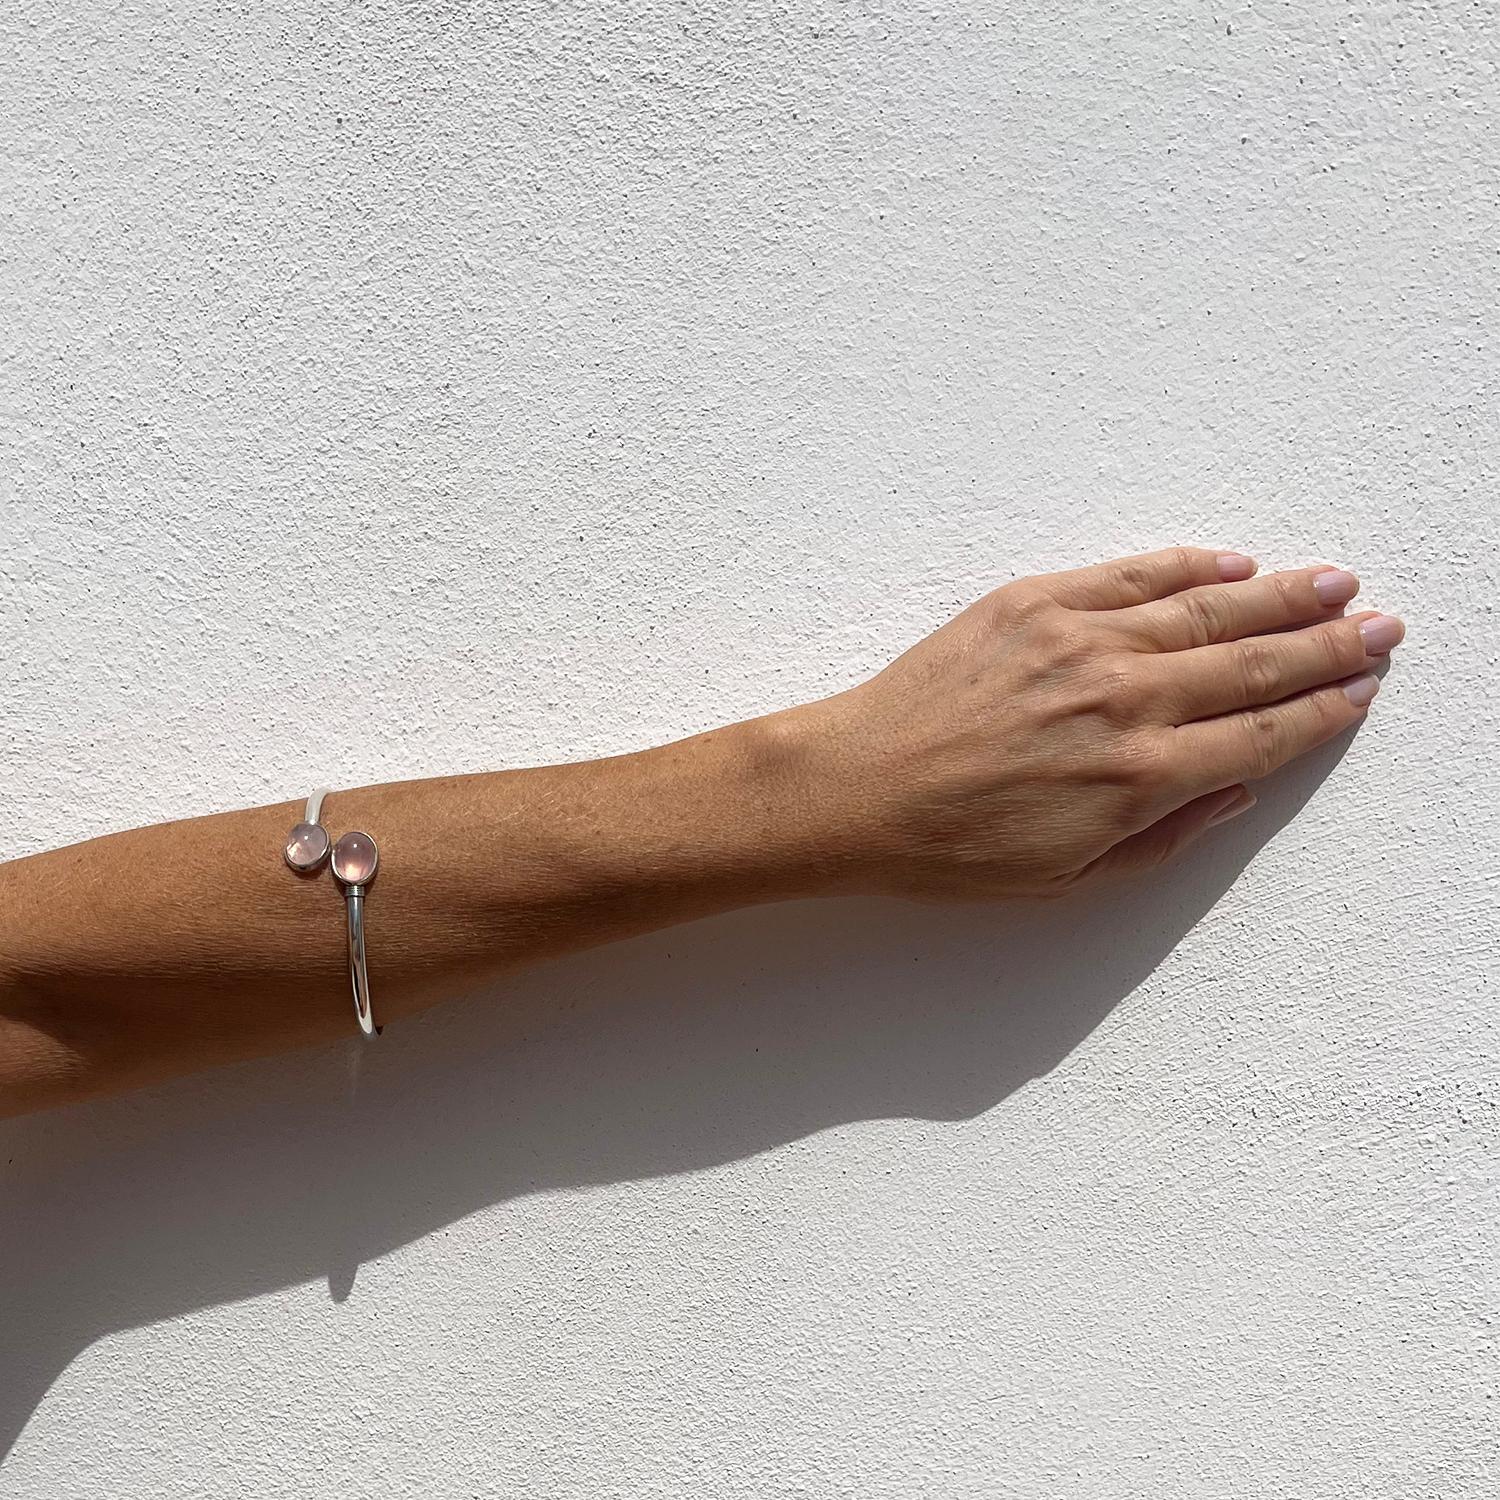 Ce bracelet manchette en argent sterling est orné de deux belles pierres de quartz rosé taillées en cabochon. Le bracelet manchette descend doucement le long du poignet, mais il peut tout aussi bien être porté vers le haut du bras, car il est